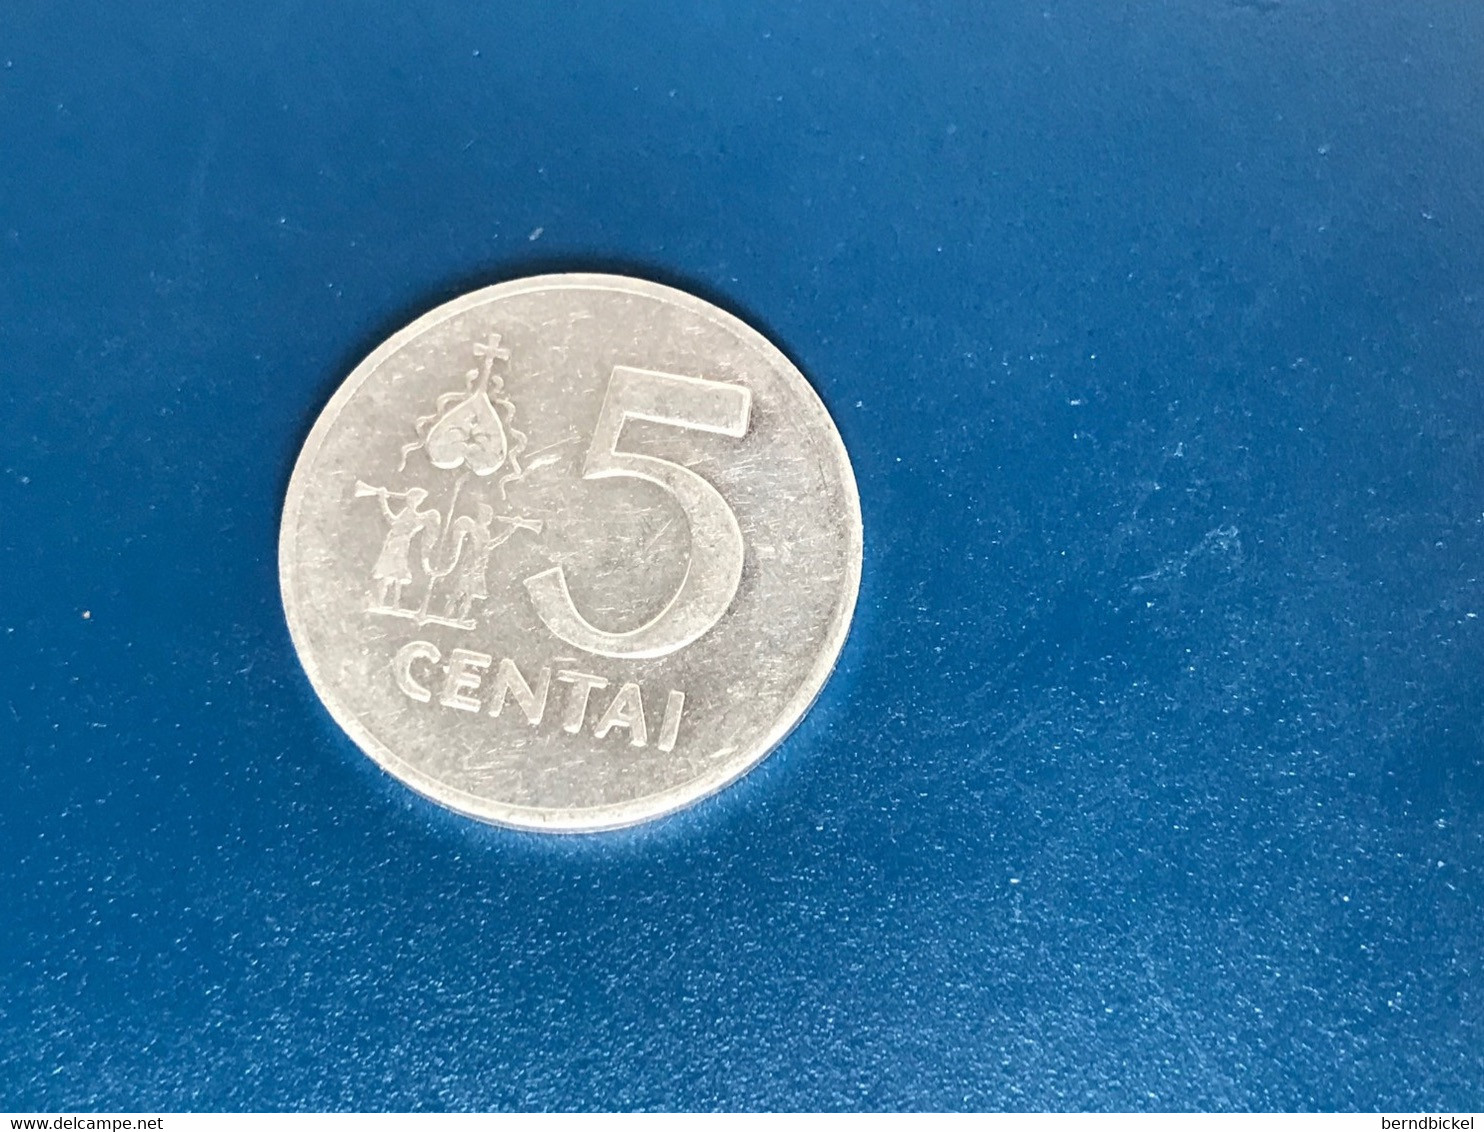 Münze Münzen Umlaufmünze Litauen 5 Centai 1991 - Litauen